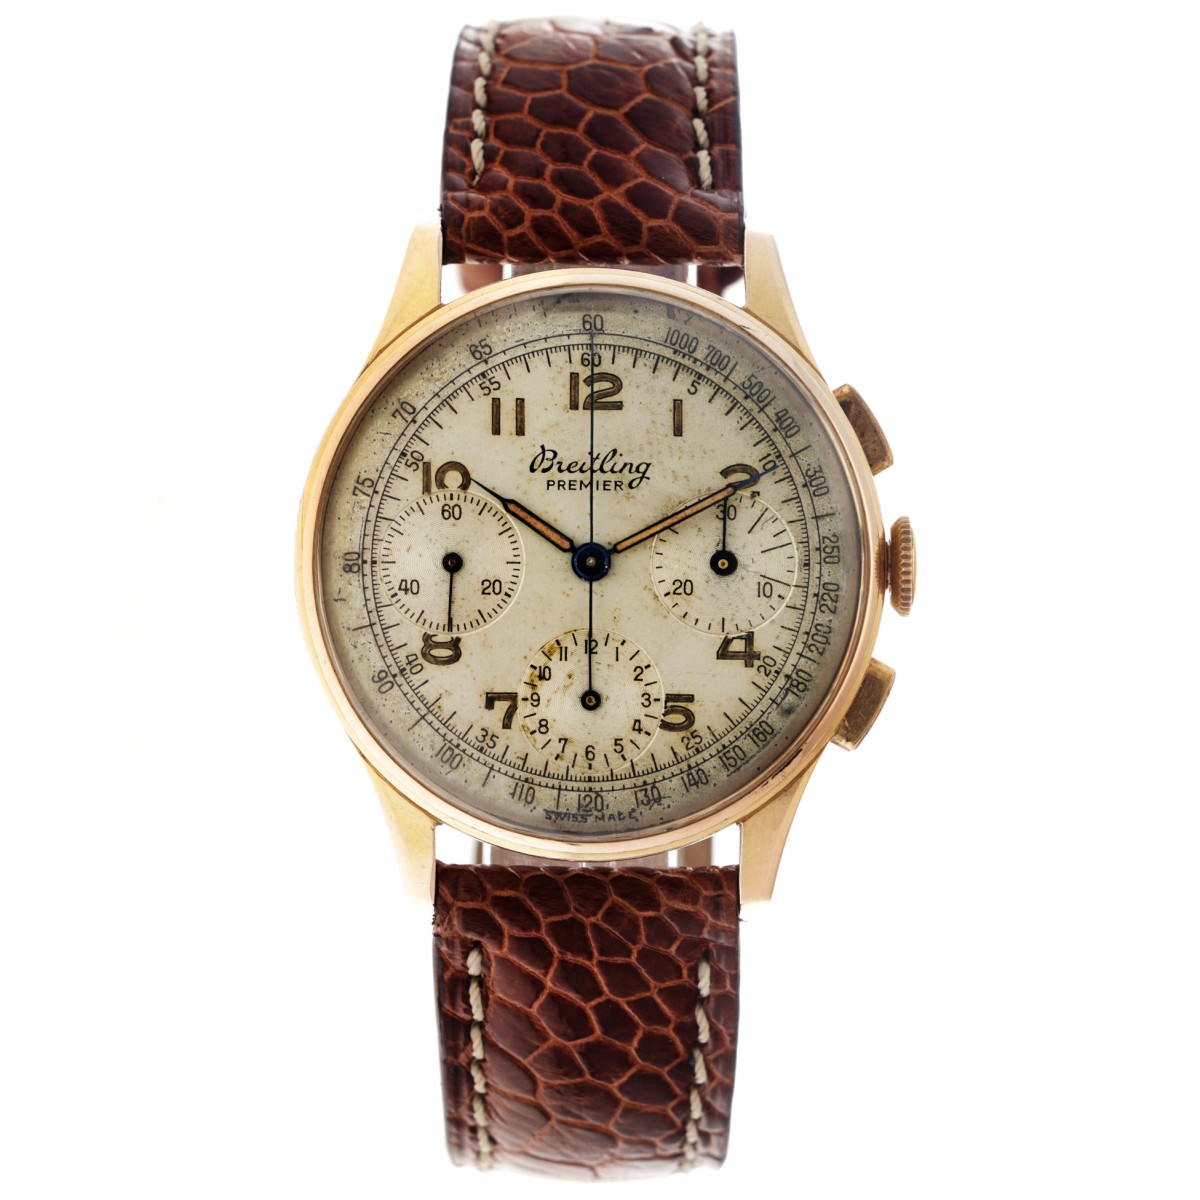 Breitling Premier chronograaf 787 - Heren horloge.